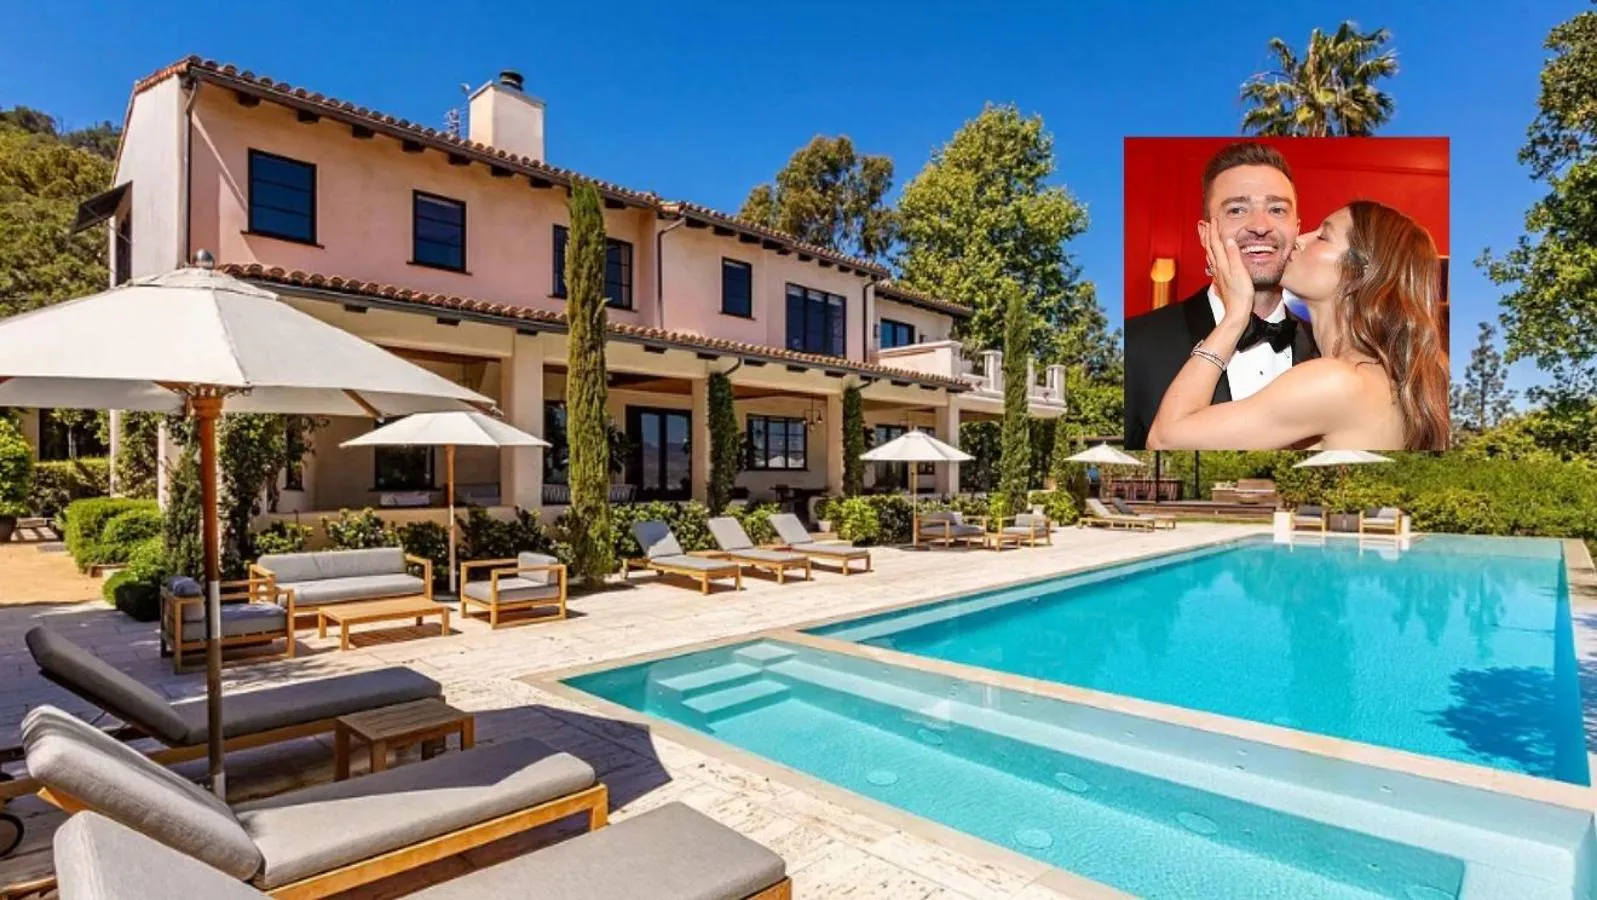 Así es la mansión de lujo que Justin Timberlake y Jessica Biel venden por 35 millones